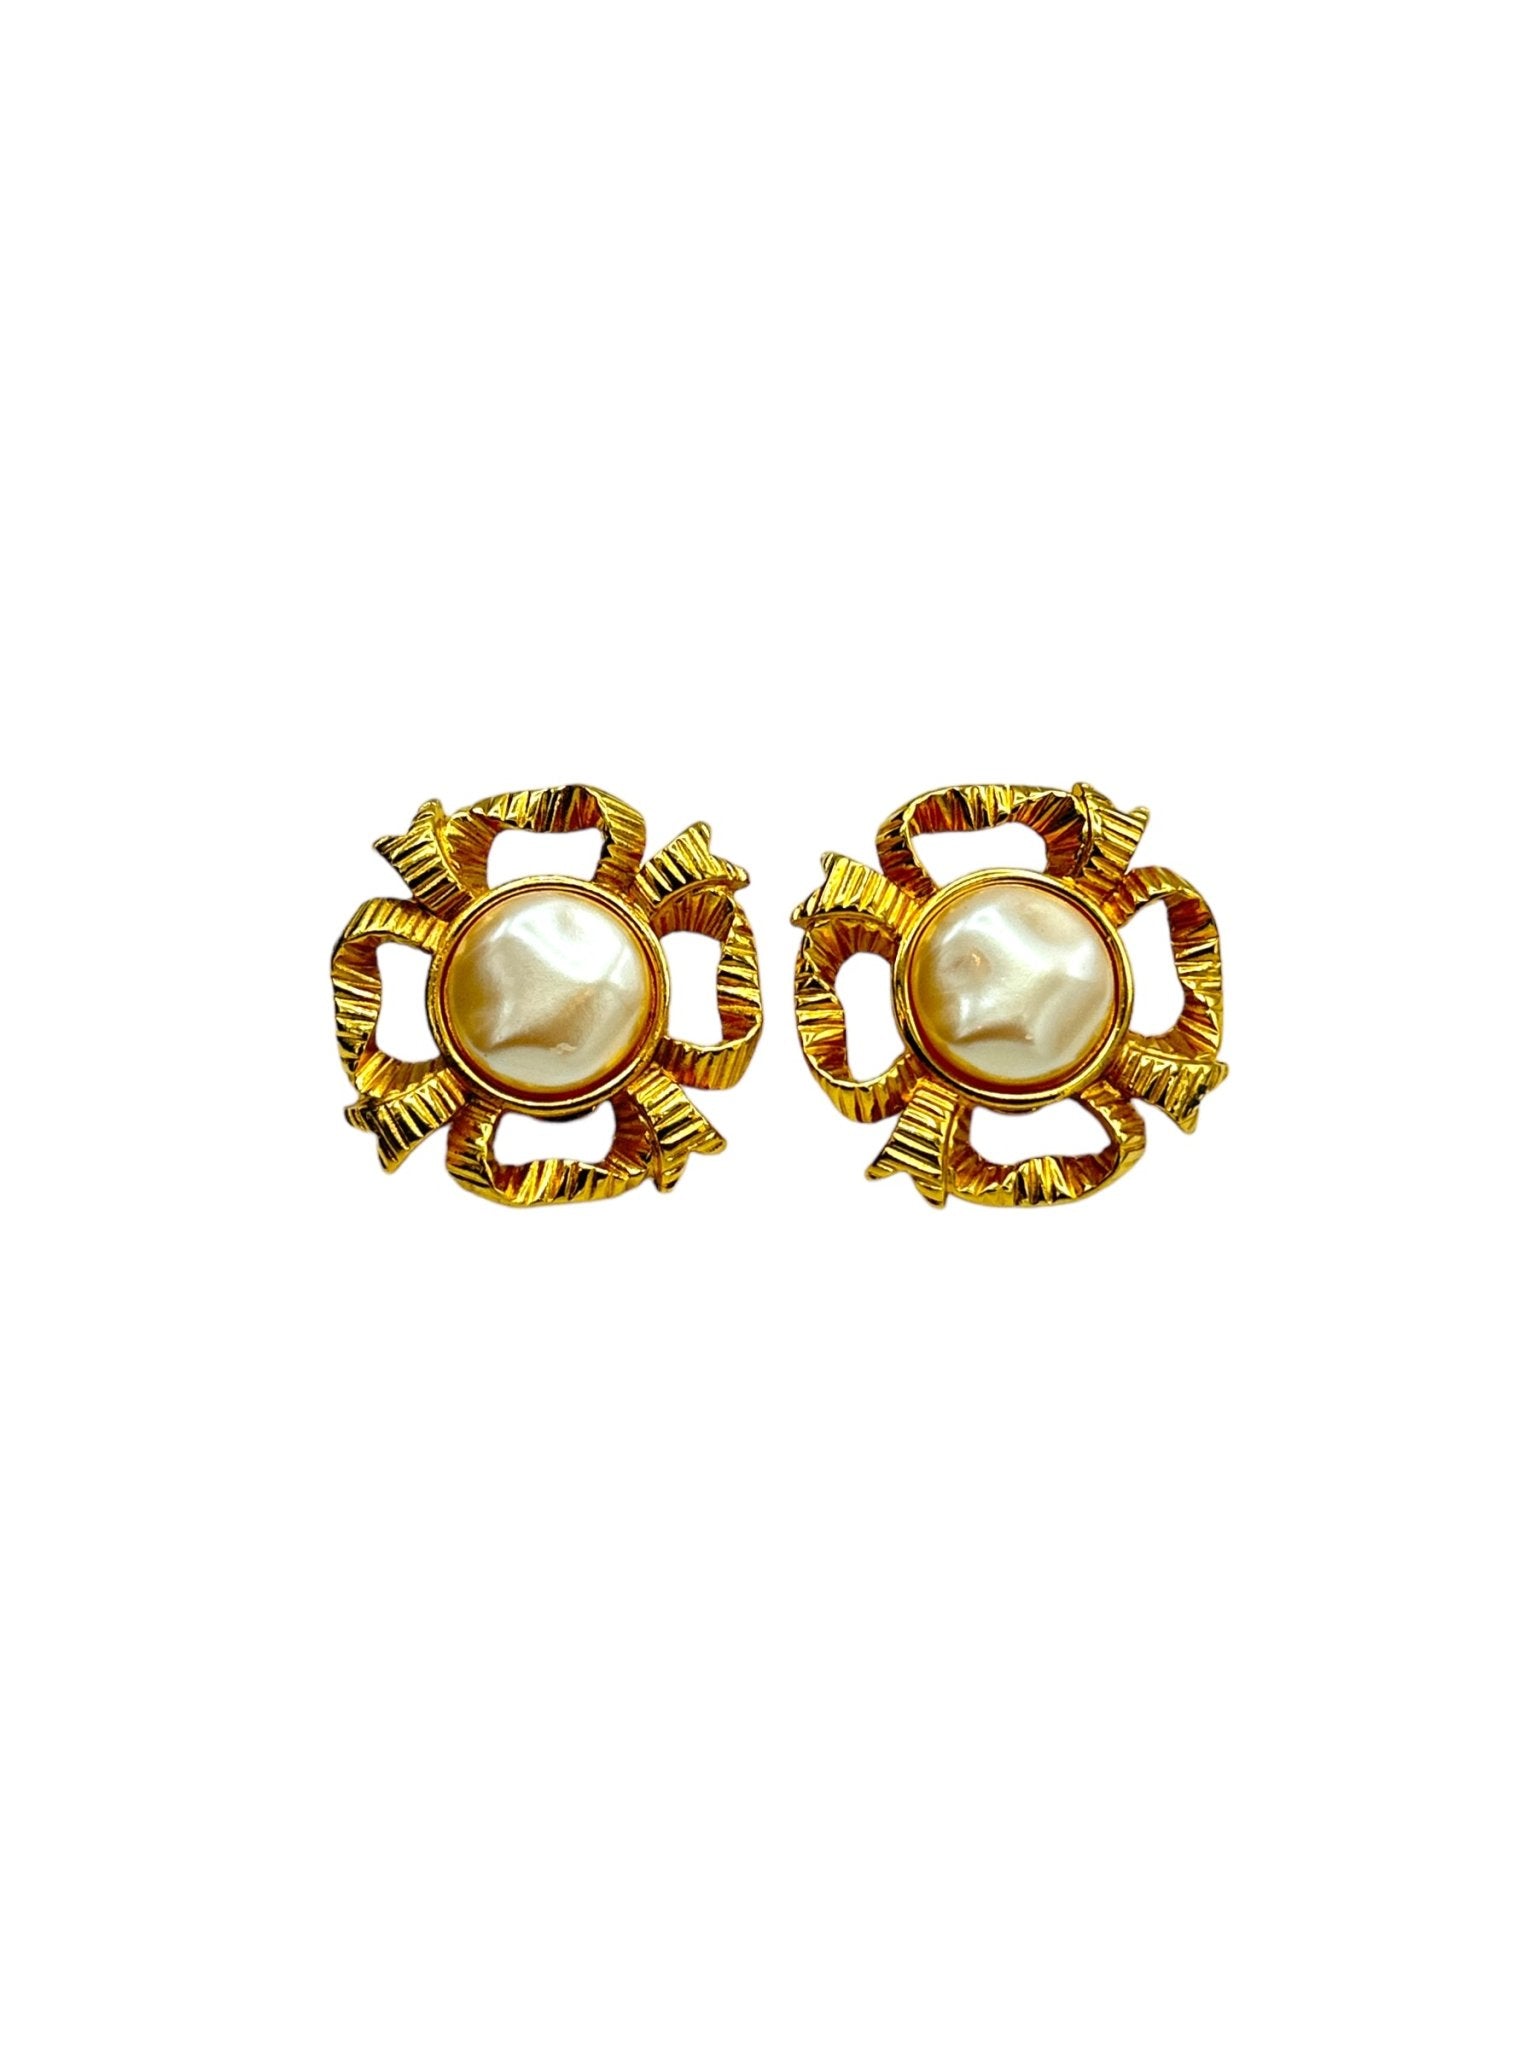 Monet Pearl Fashion Earrings for sale | eBay